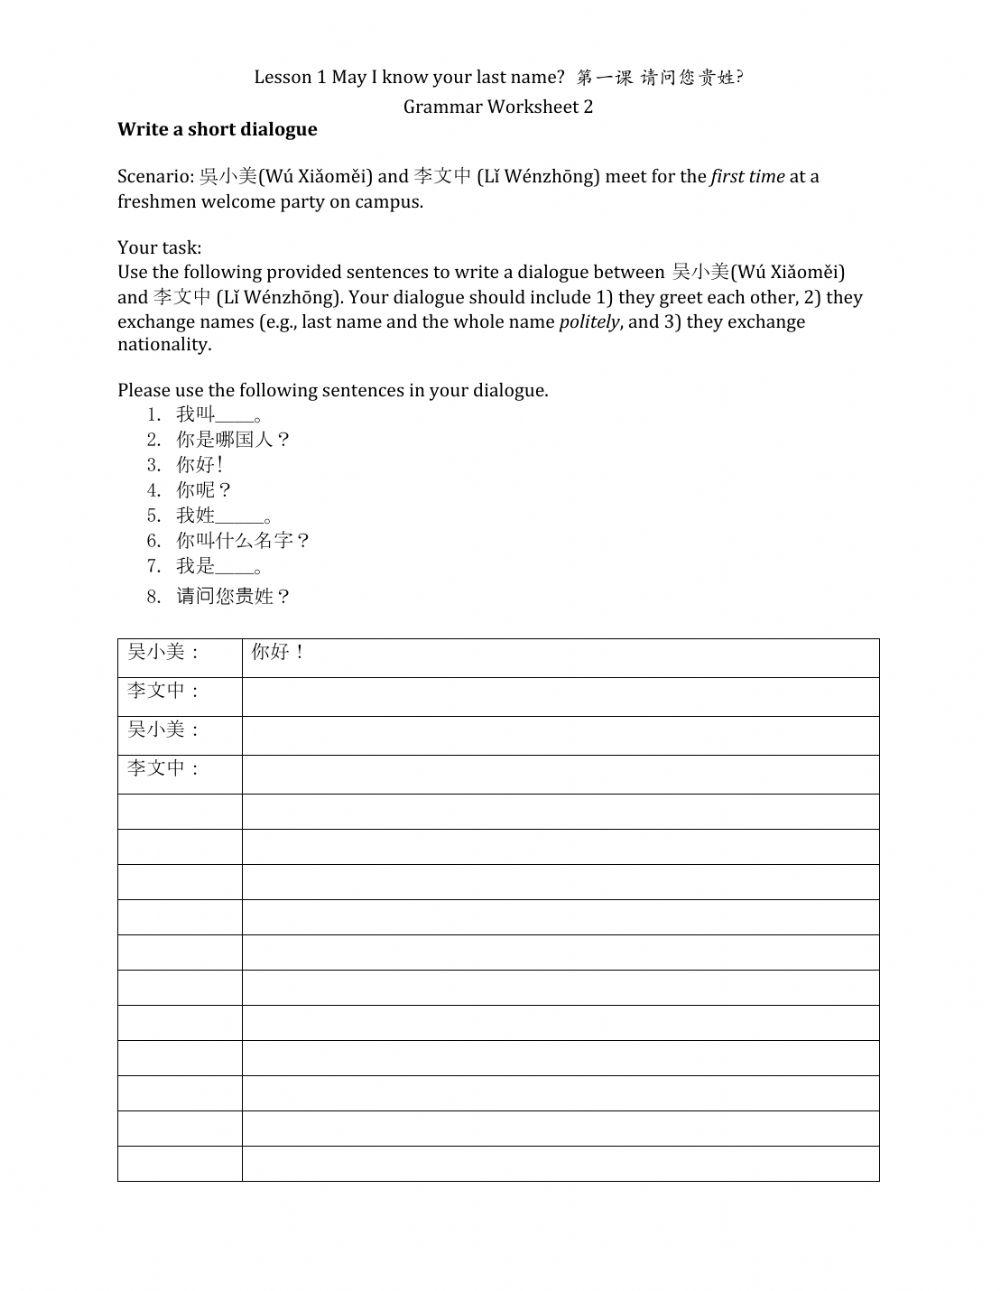 MTC - L1 Grammar Worksheet 2